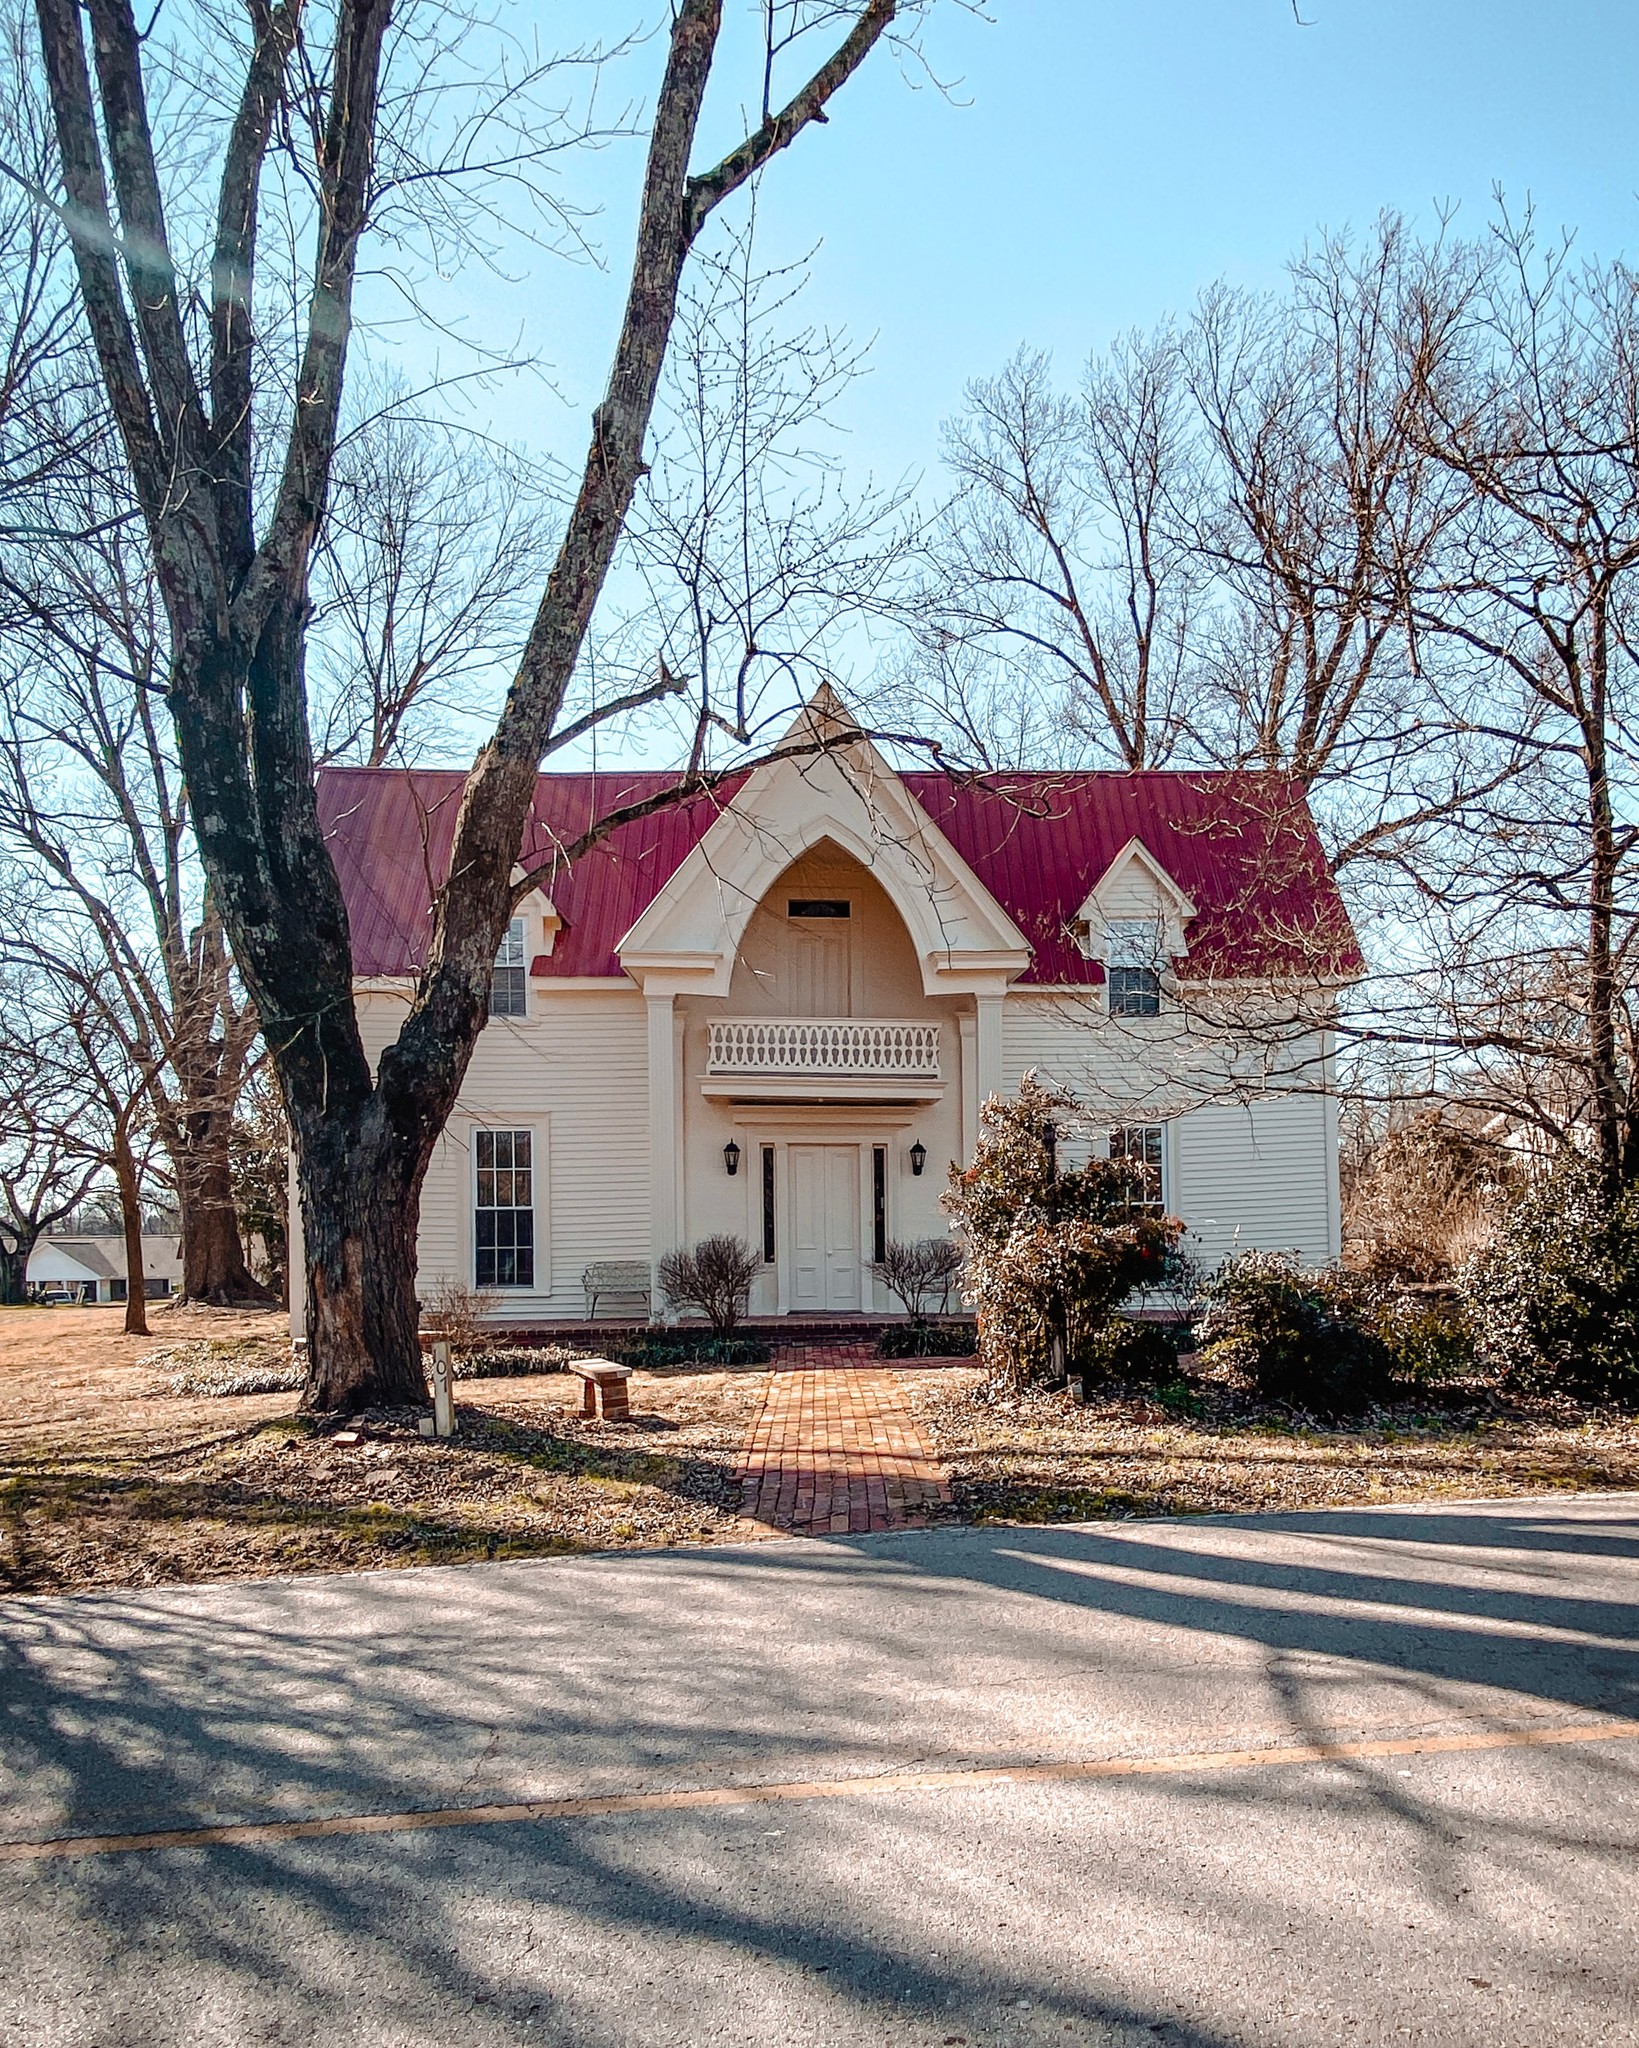 1877 Lynchburg Historic Home